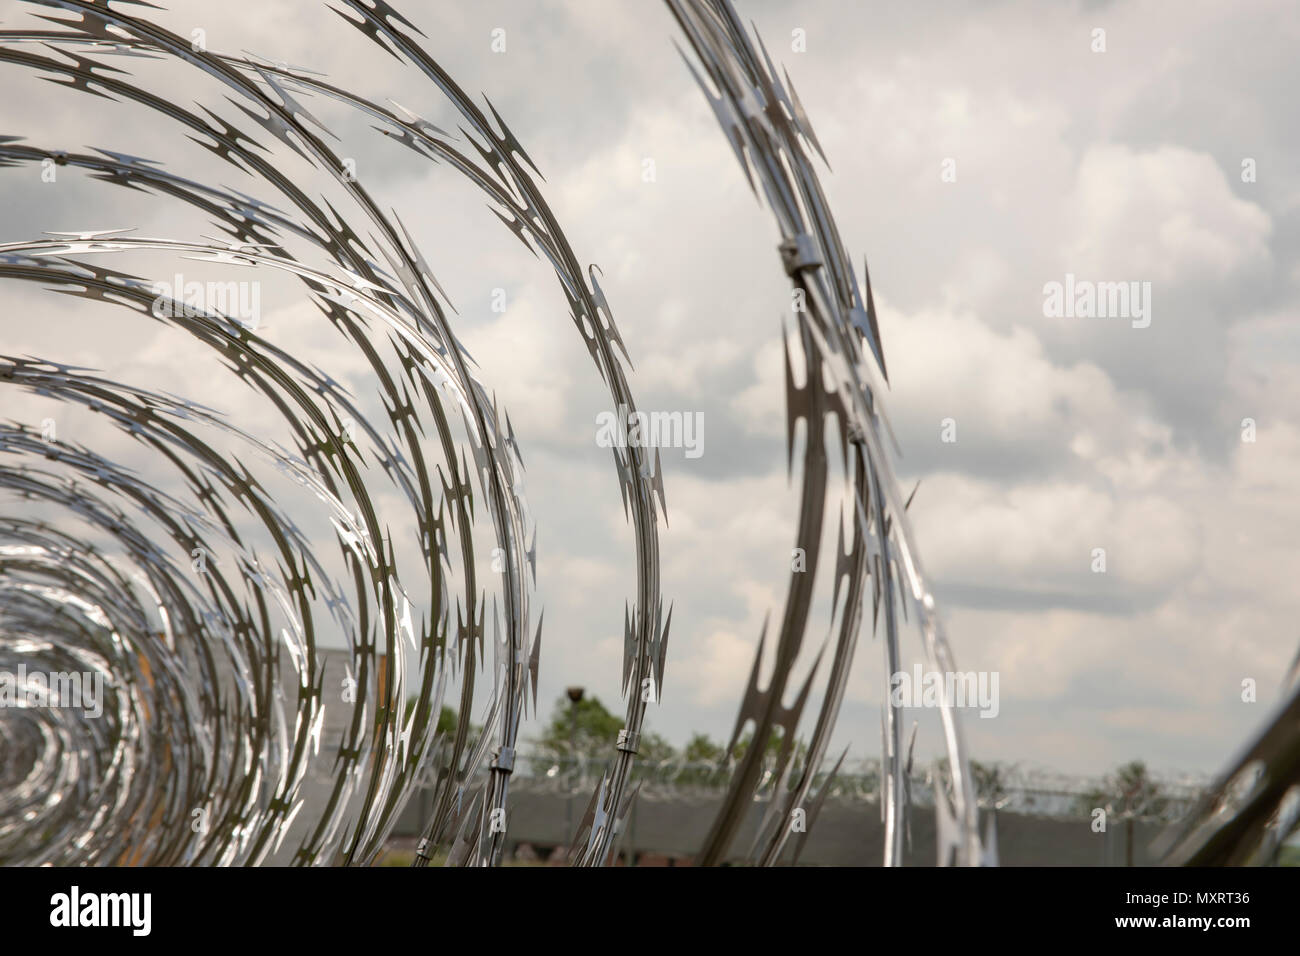 Nahaufnahme von gerollter Stacheldraht auf Metall Zaun an verlassenen Gefängnis Hof. Stockfoto